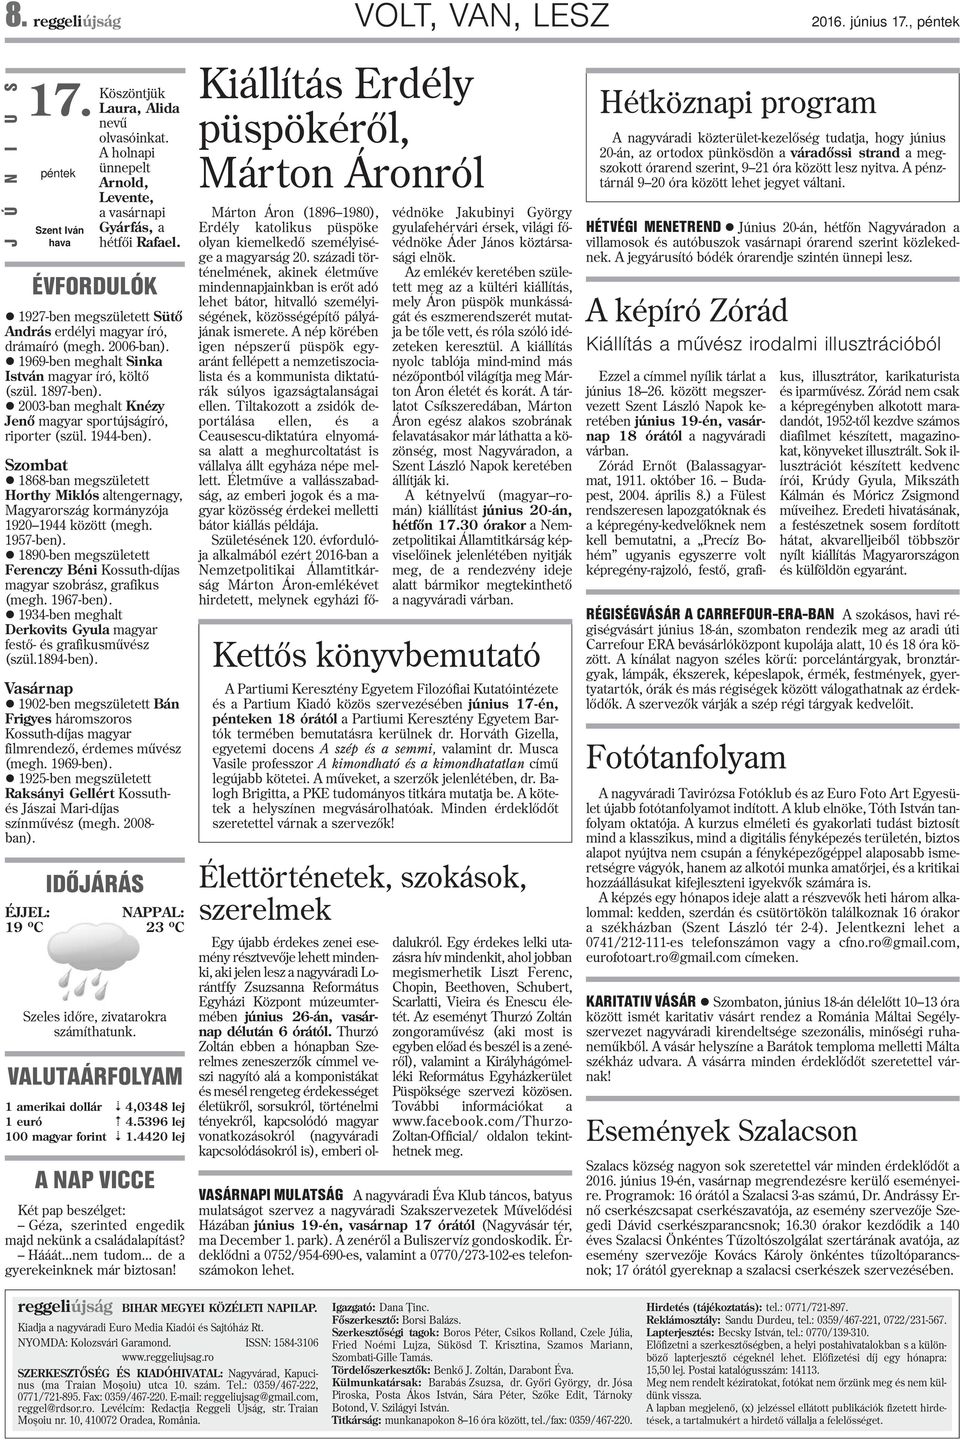 969-ben meghat Sinka István magyar író, kötõ (szü. 897-ben). 2003-ban meghat Knézy Jenõ magyar sportújságíró, riporter (szü. 944-ben).